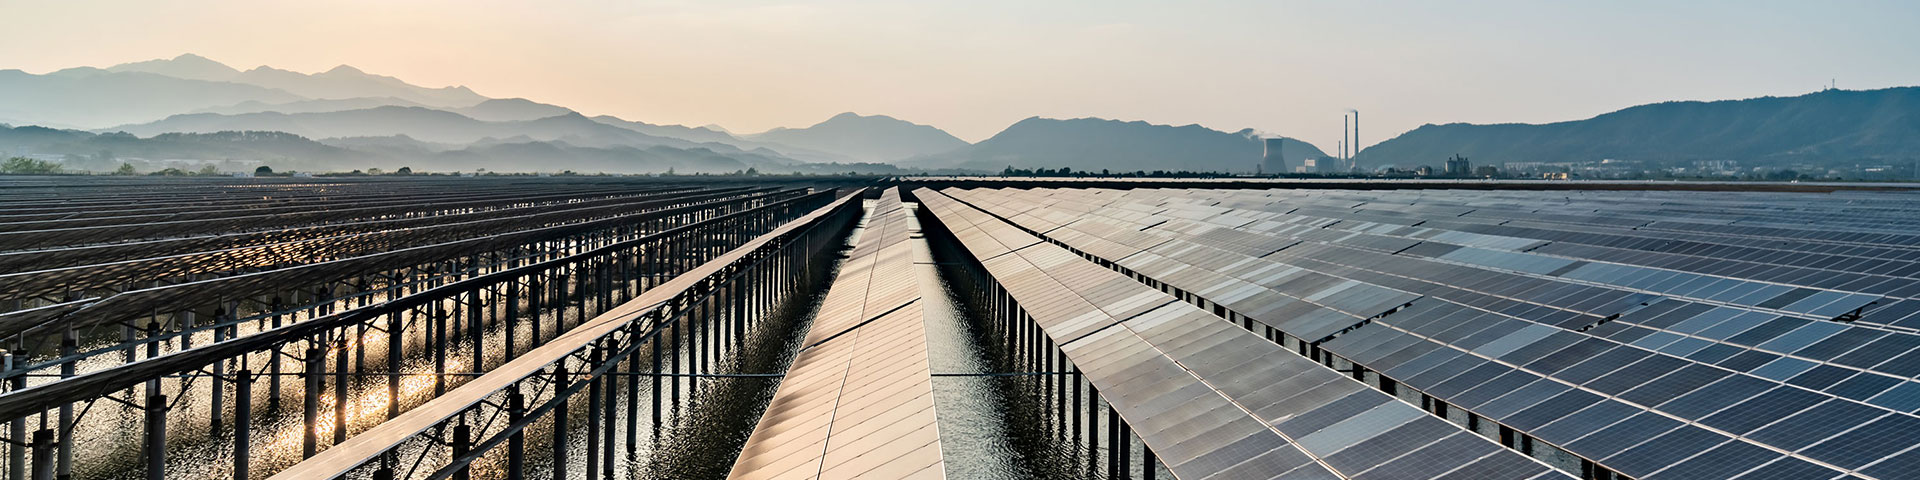 Ein Solarpark vor einer Berglandschaft. Keine Angaben notwendige (da Royalty-free image von Getty images)